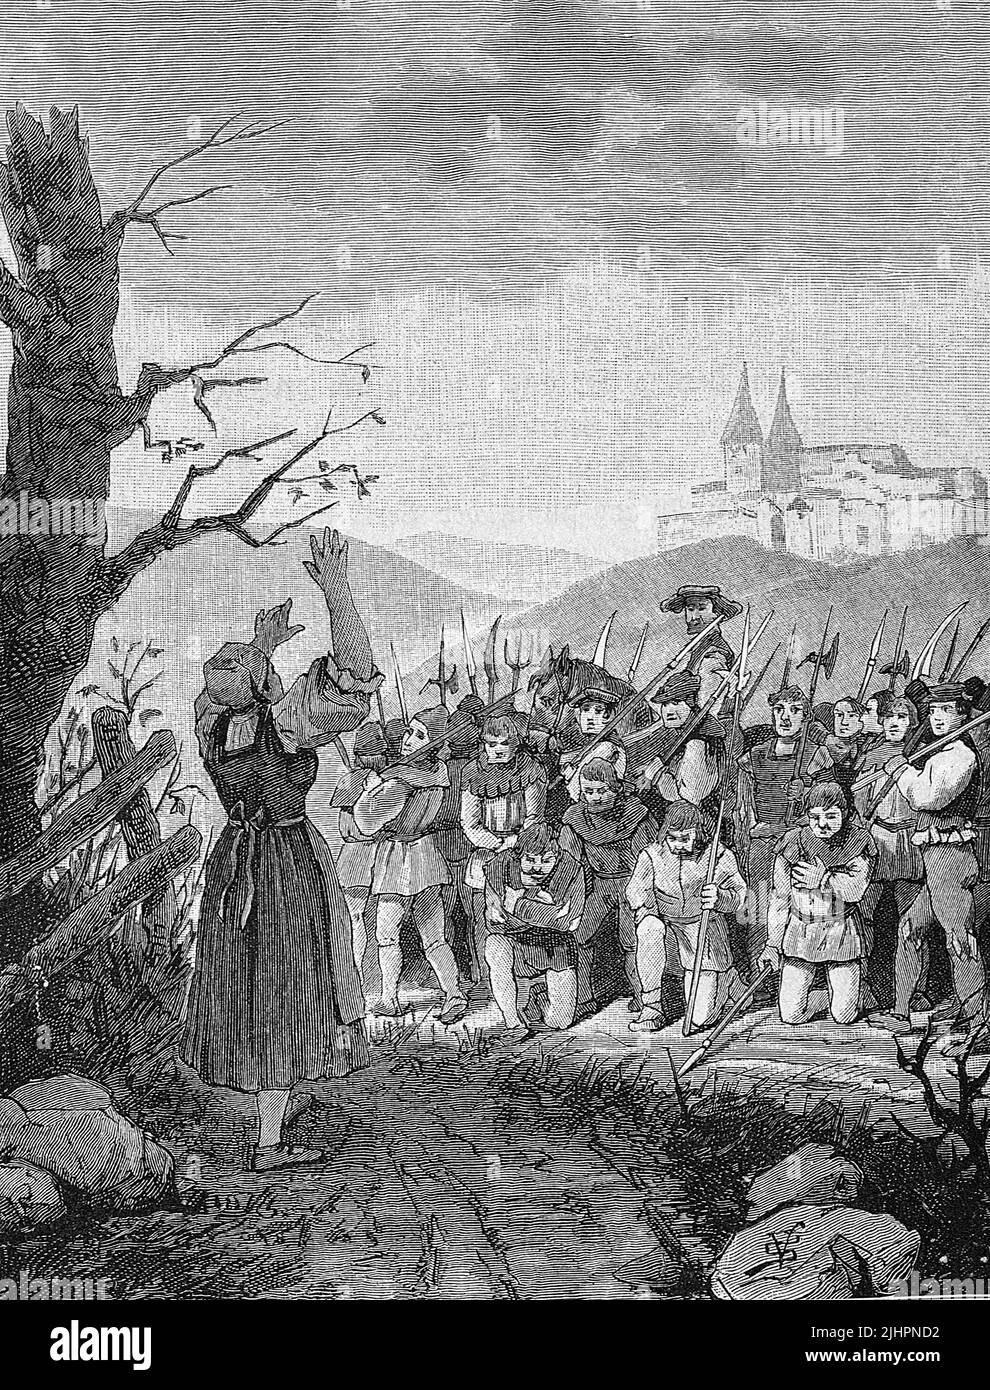 Deutscher Bauernkrieg, 1524-1526, Die schwarze Hofmännin segnet die Bauern. Margarete Renner (geboren um 1475, gestorben 1535), genannt die Schwarze Hofmännin, ist die einzige namentlich bekannte Frau, die an den Bauernkriegen des 16. Jahrhunderts aktiv teilnahm / German Peasants' War, 1524-1526, The Black Court Woman benedice i contadini. Margarete Renner (nato intorno al 1475, morto 1535), chiamato la donna di corte nera, è l'unica donna conosciuta per nome per aver preso parte attiva nelle guerre dei contadini del 16th secolo, Historisch, restaurierte digitale Reproduktion einer Originalvorlage aus de Foto Stock